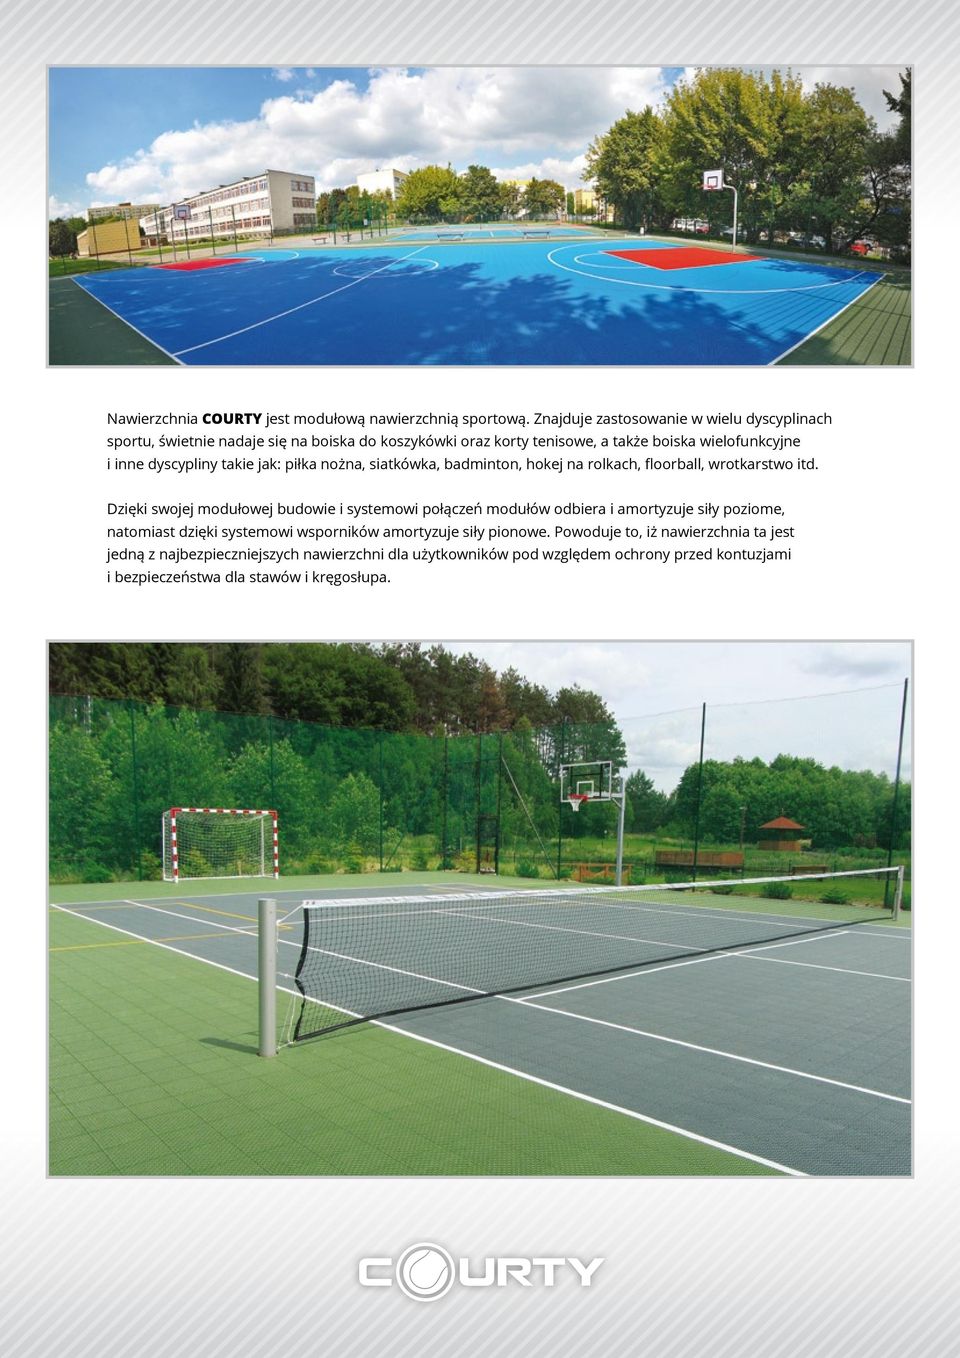 dyscypliny takie jak: piłka nożna, siatkówka, badminton, hokej na rolkach, floorball, wrotkarstwo itd.